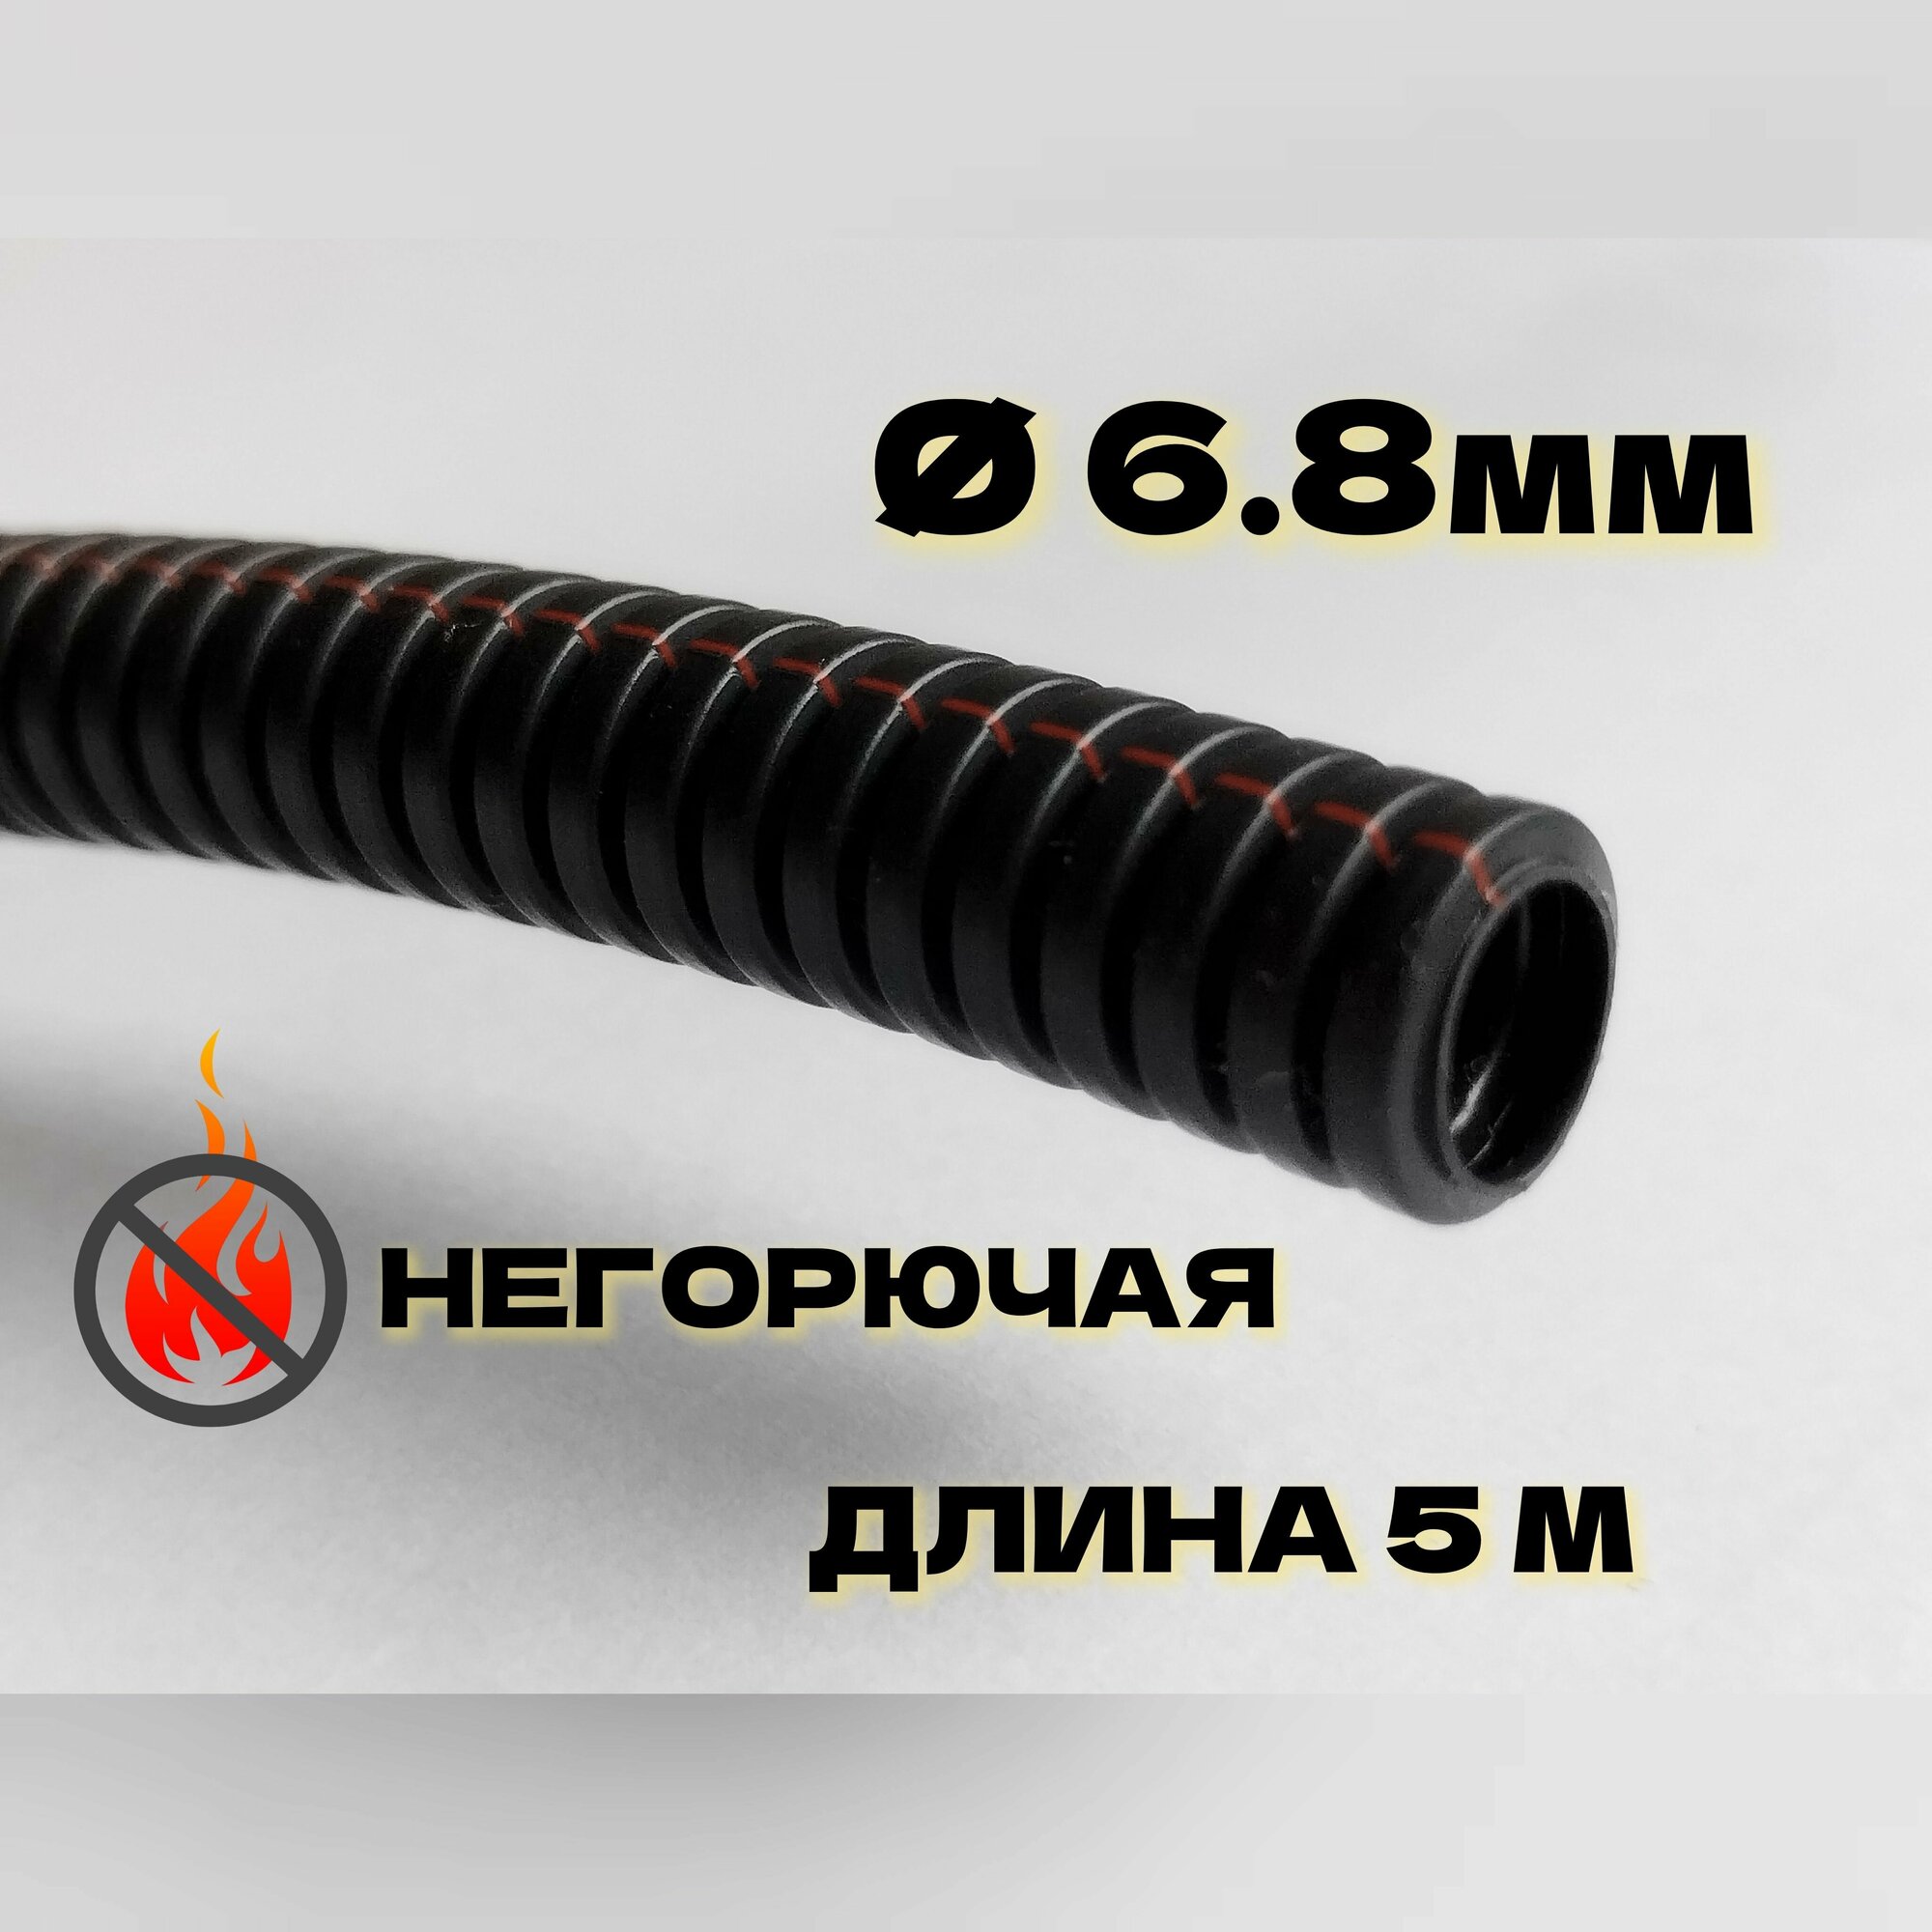 Автомобильная гофра для проводки неразрезная ПП тип В, 5 метров, d6.8мм, негорючая (DKC)